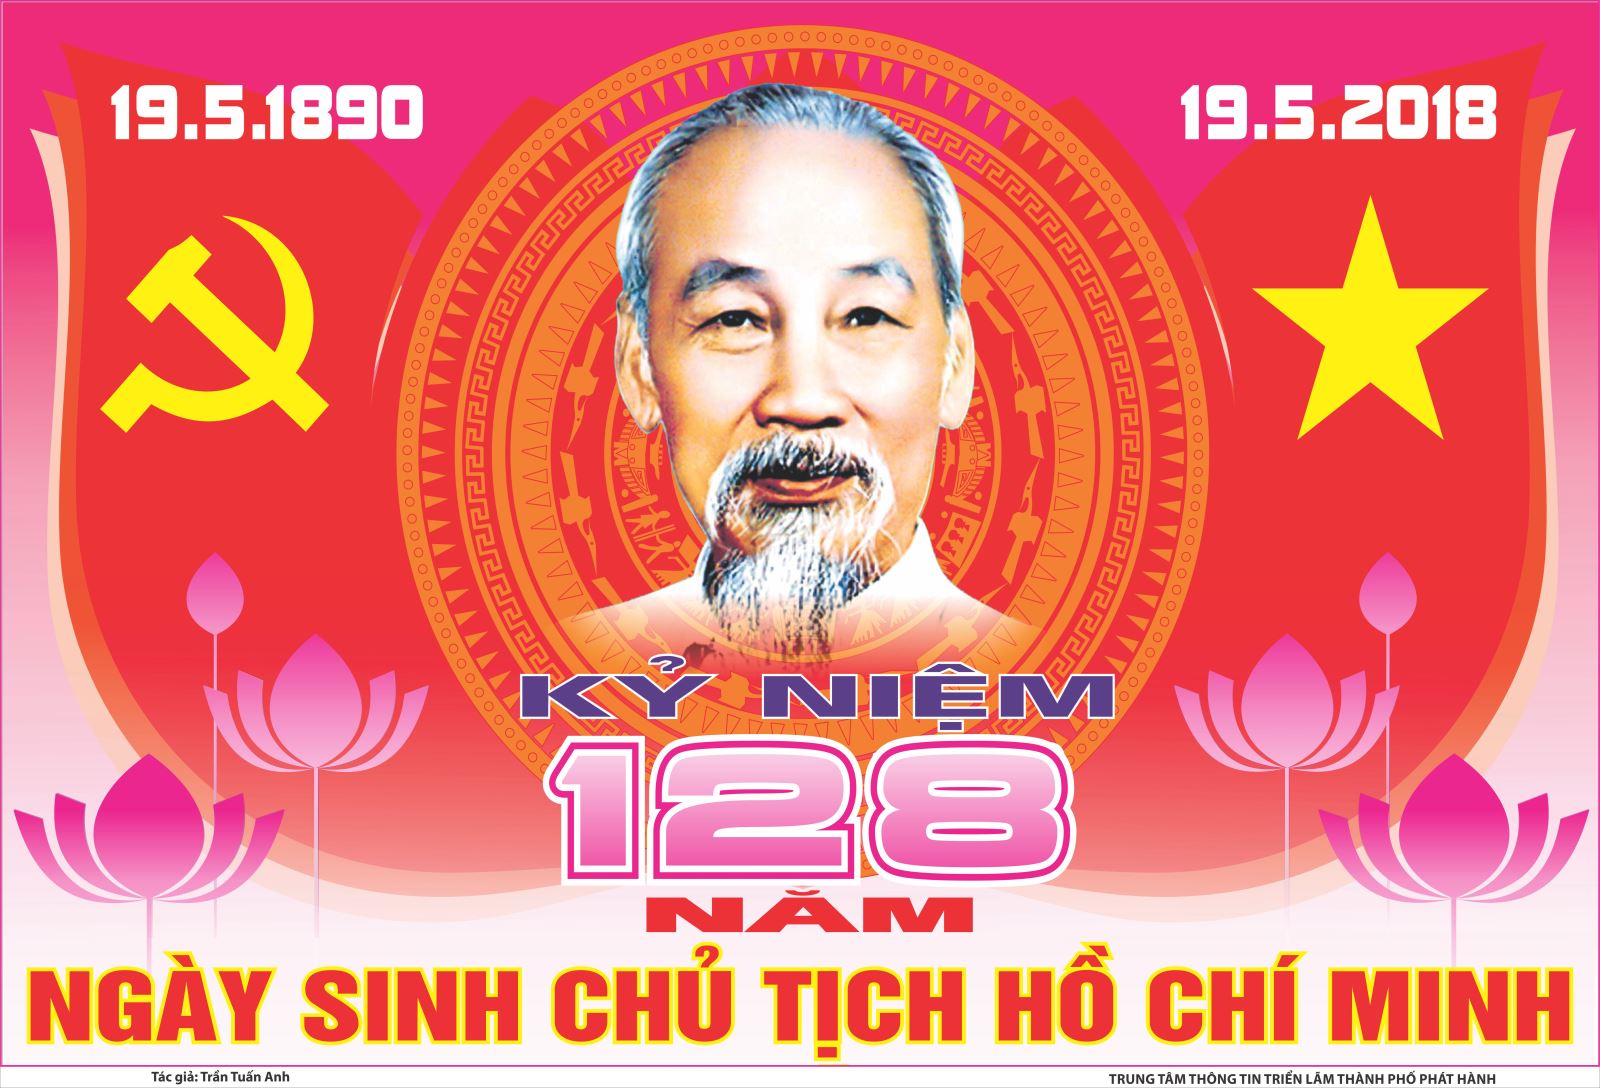 Tuyên truyền kỷ niệm 128 năm ngày sinh Chủ tịch Hồ Chí Minh (19/5/1890 - 19/5/2018)